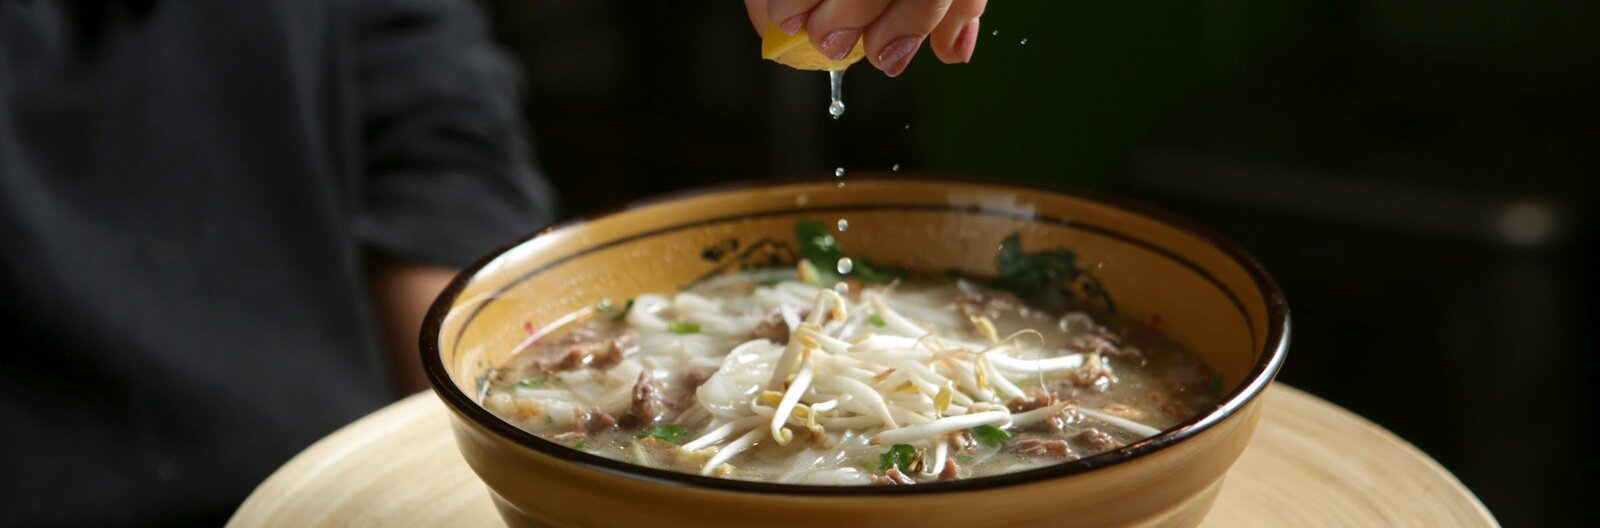 10 tuti tipp, ahol ízletes pho leveseket ehetsz